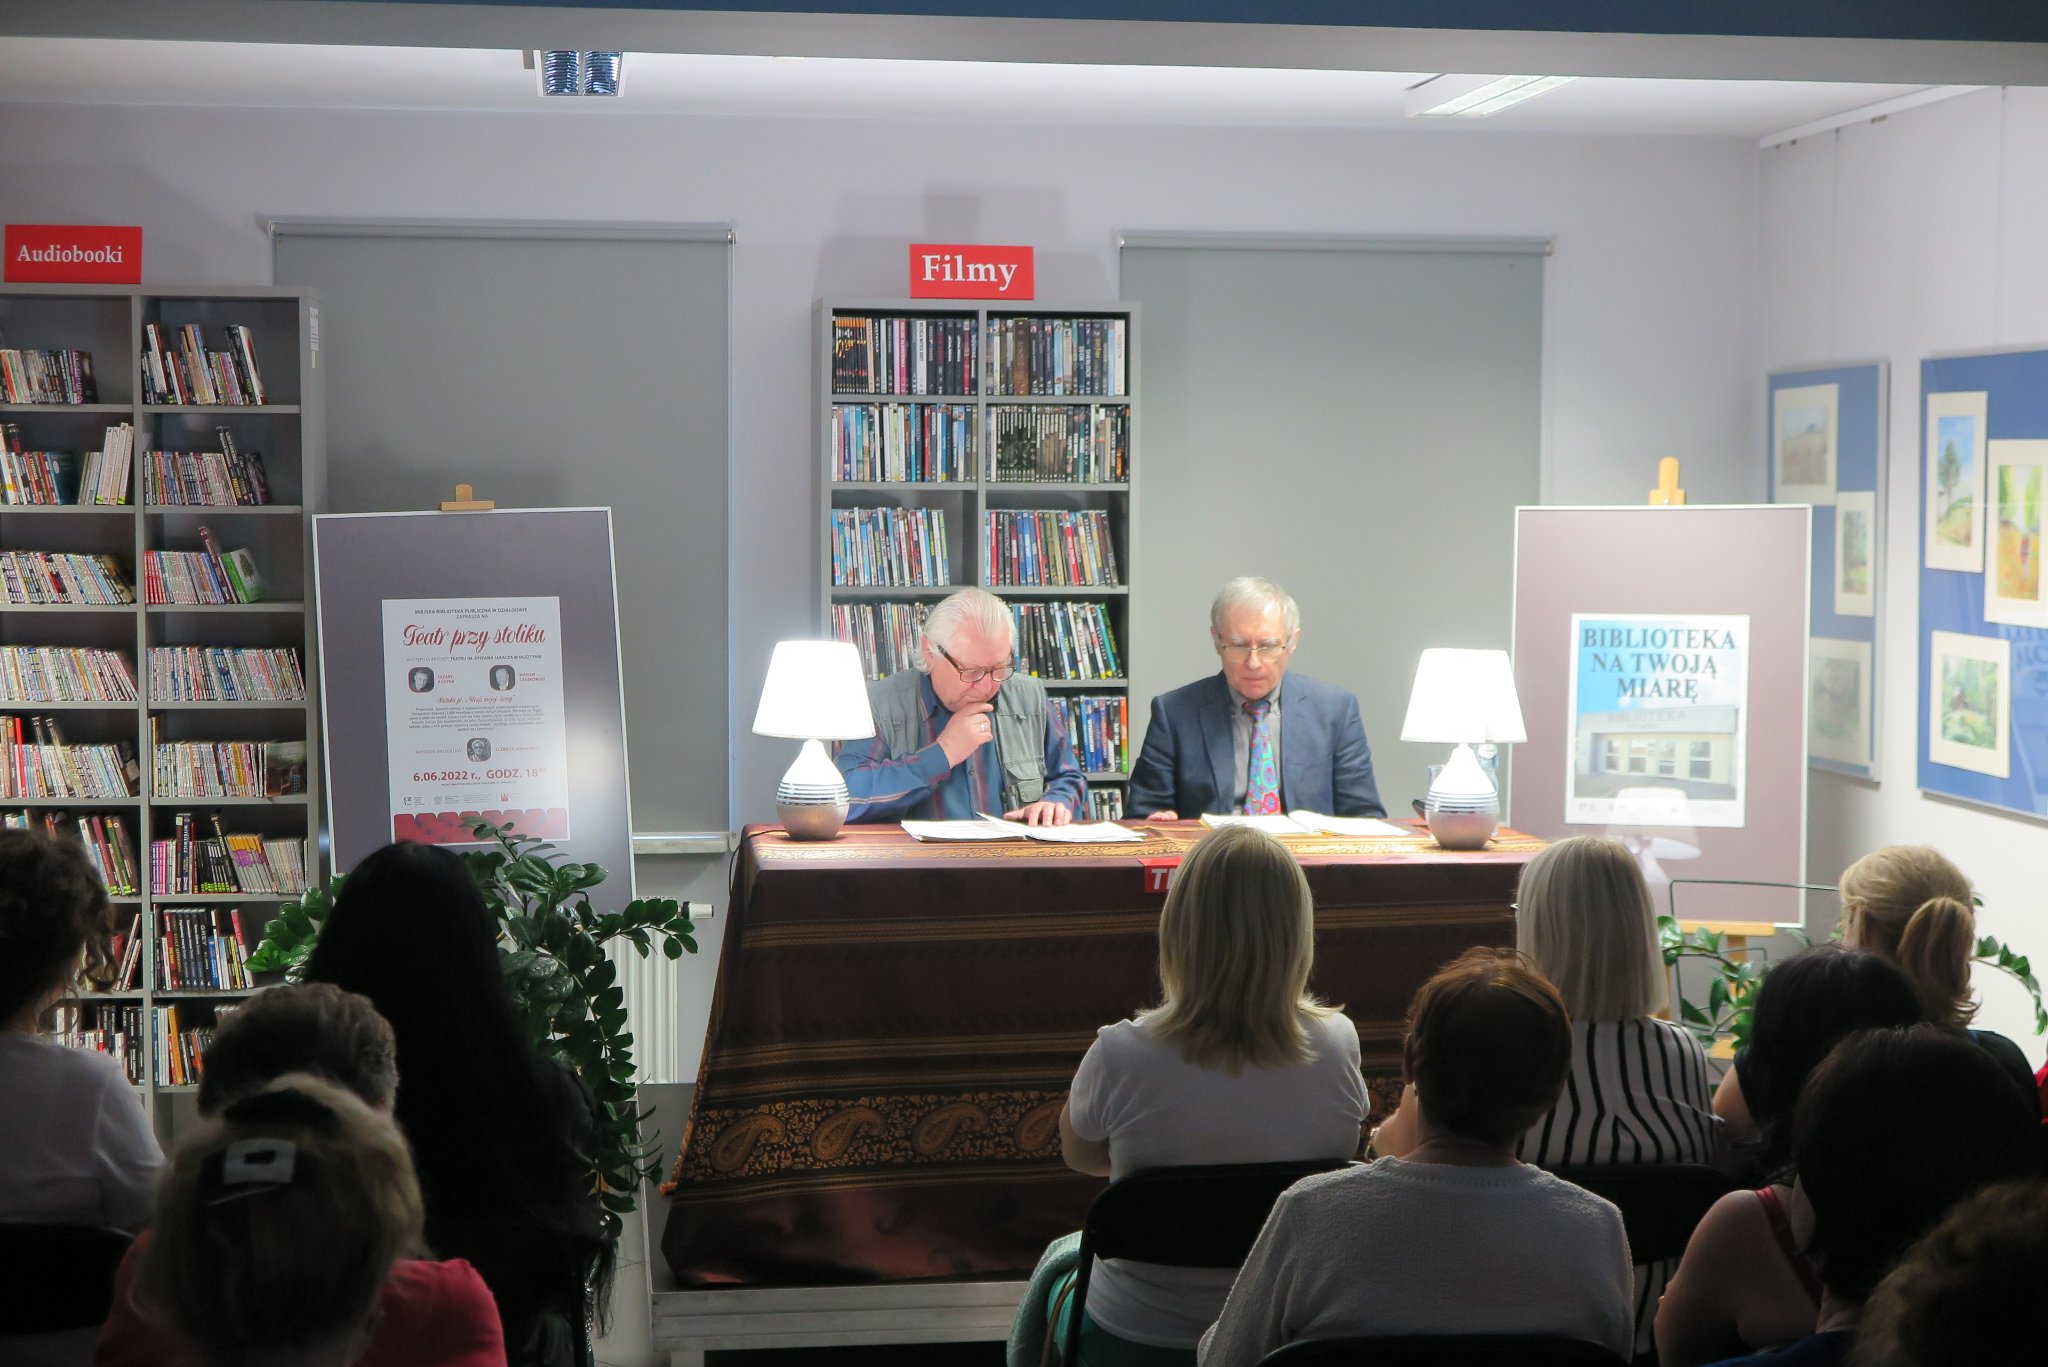 Cezary Ilczyna i Marian Czarkowski siedzą na krzesłach przy stoliku, przed nimi siedzi publiczność